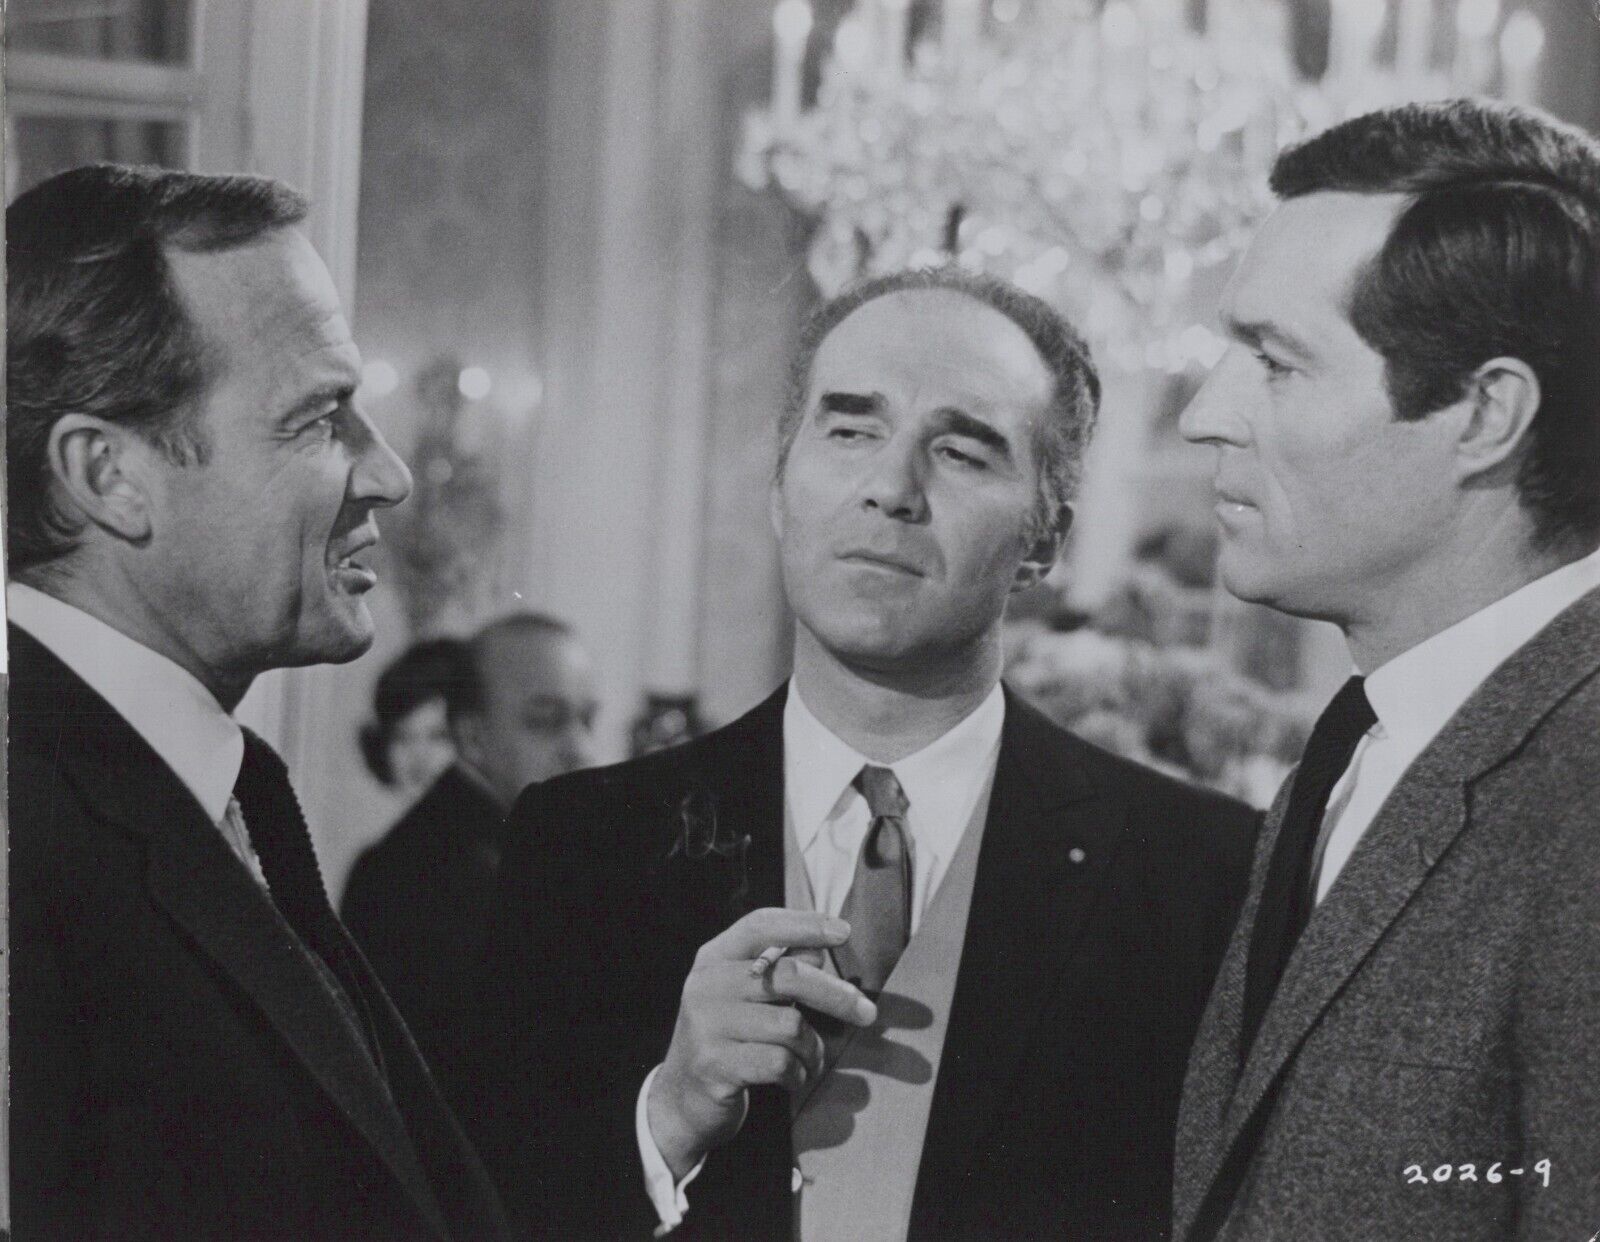 Frederick Stafford + Michel Piccoli + John Van Dreelen -Topaz (1969) Photo K 316